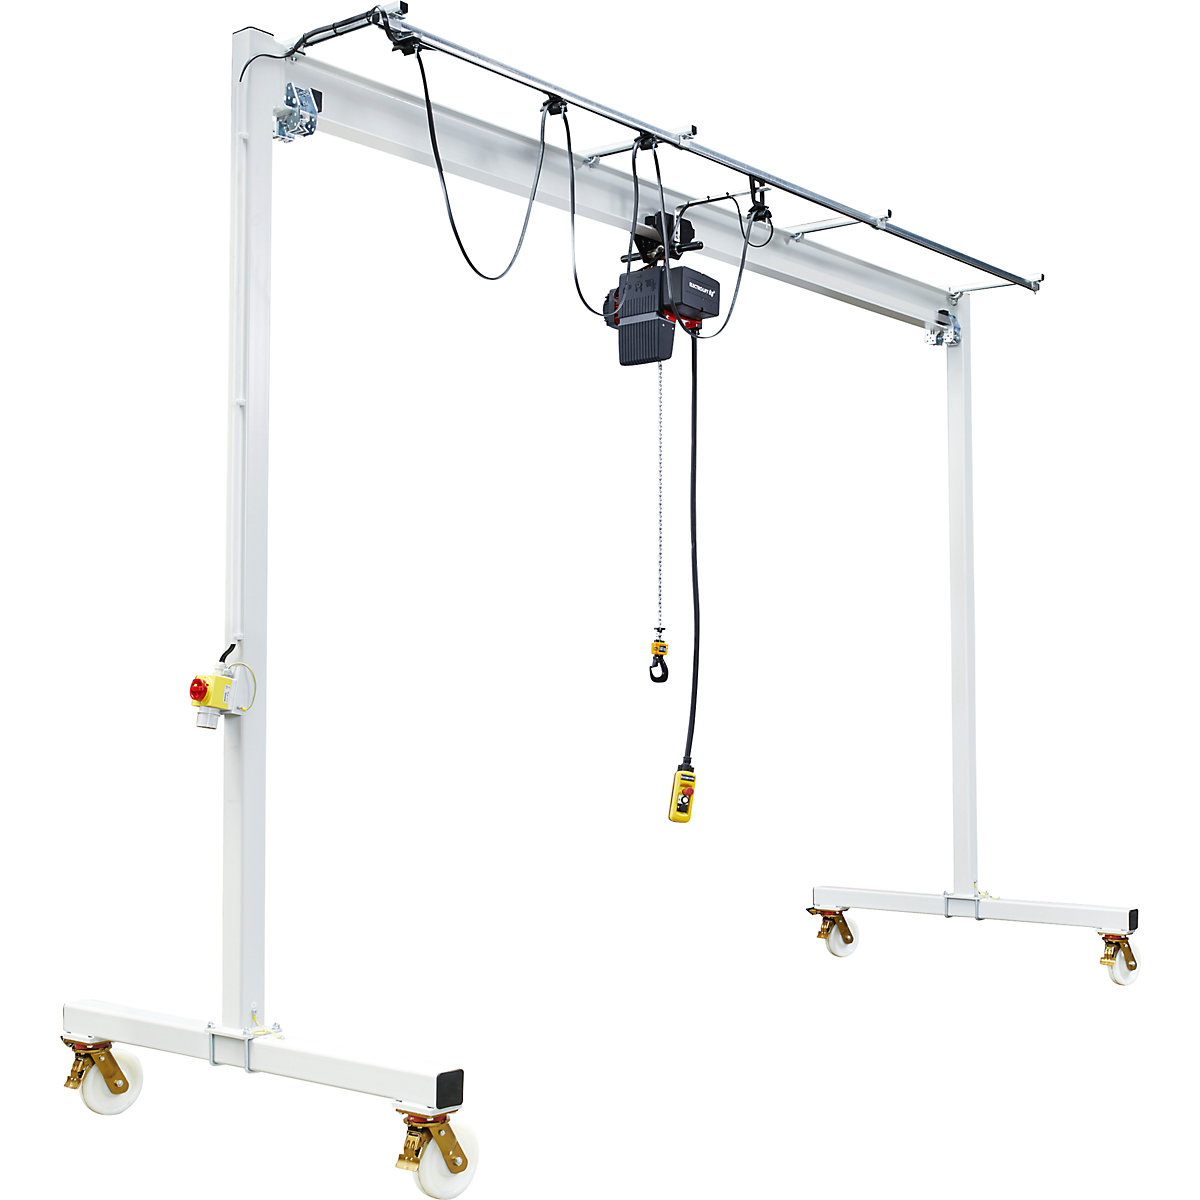 Steel mobile gantry crane PA – Vetter